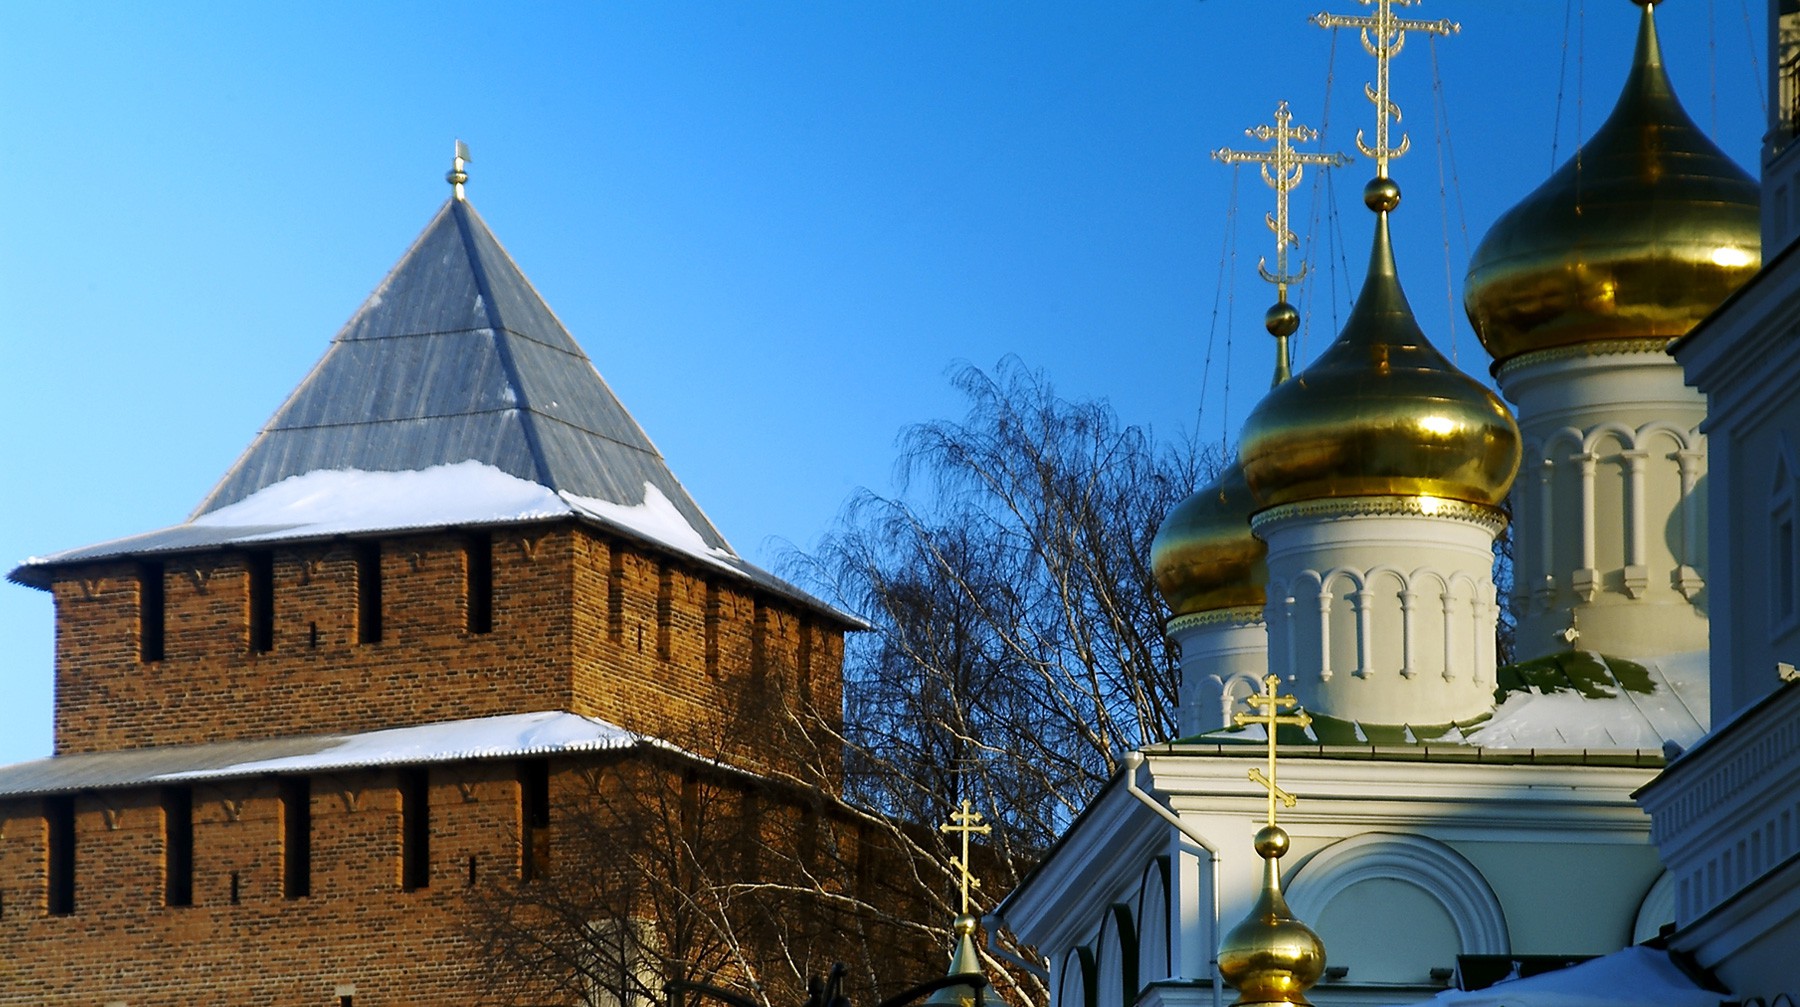 Dailystorm - Нижний Новгород обошел Москву и Санкт-Петербург по качеству жизни